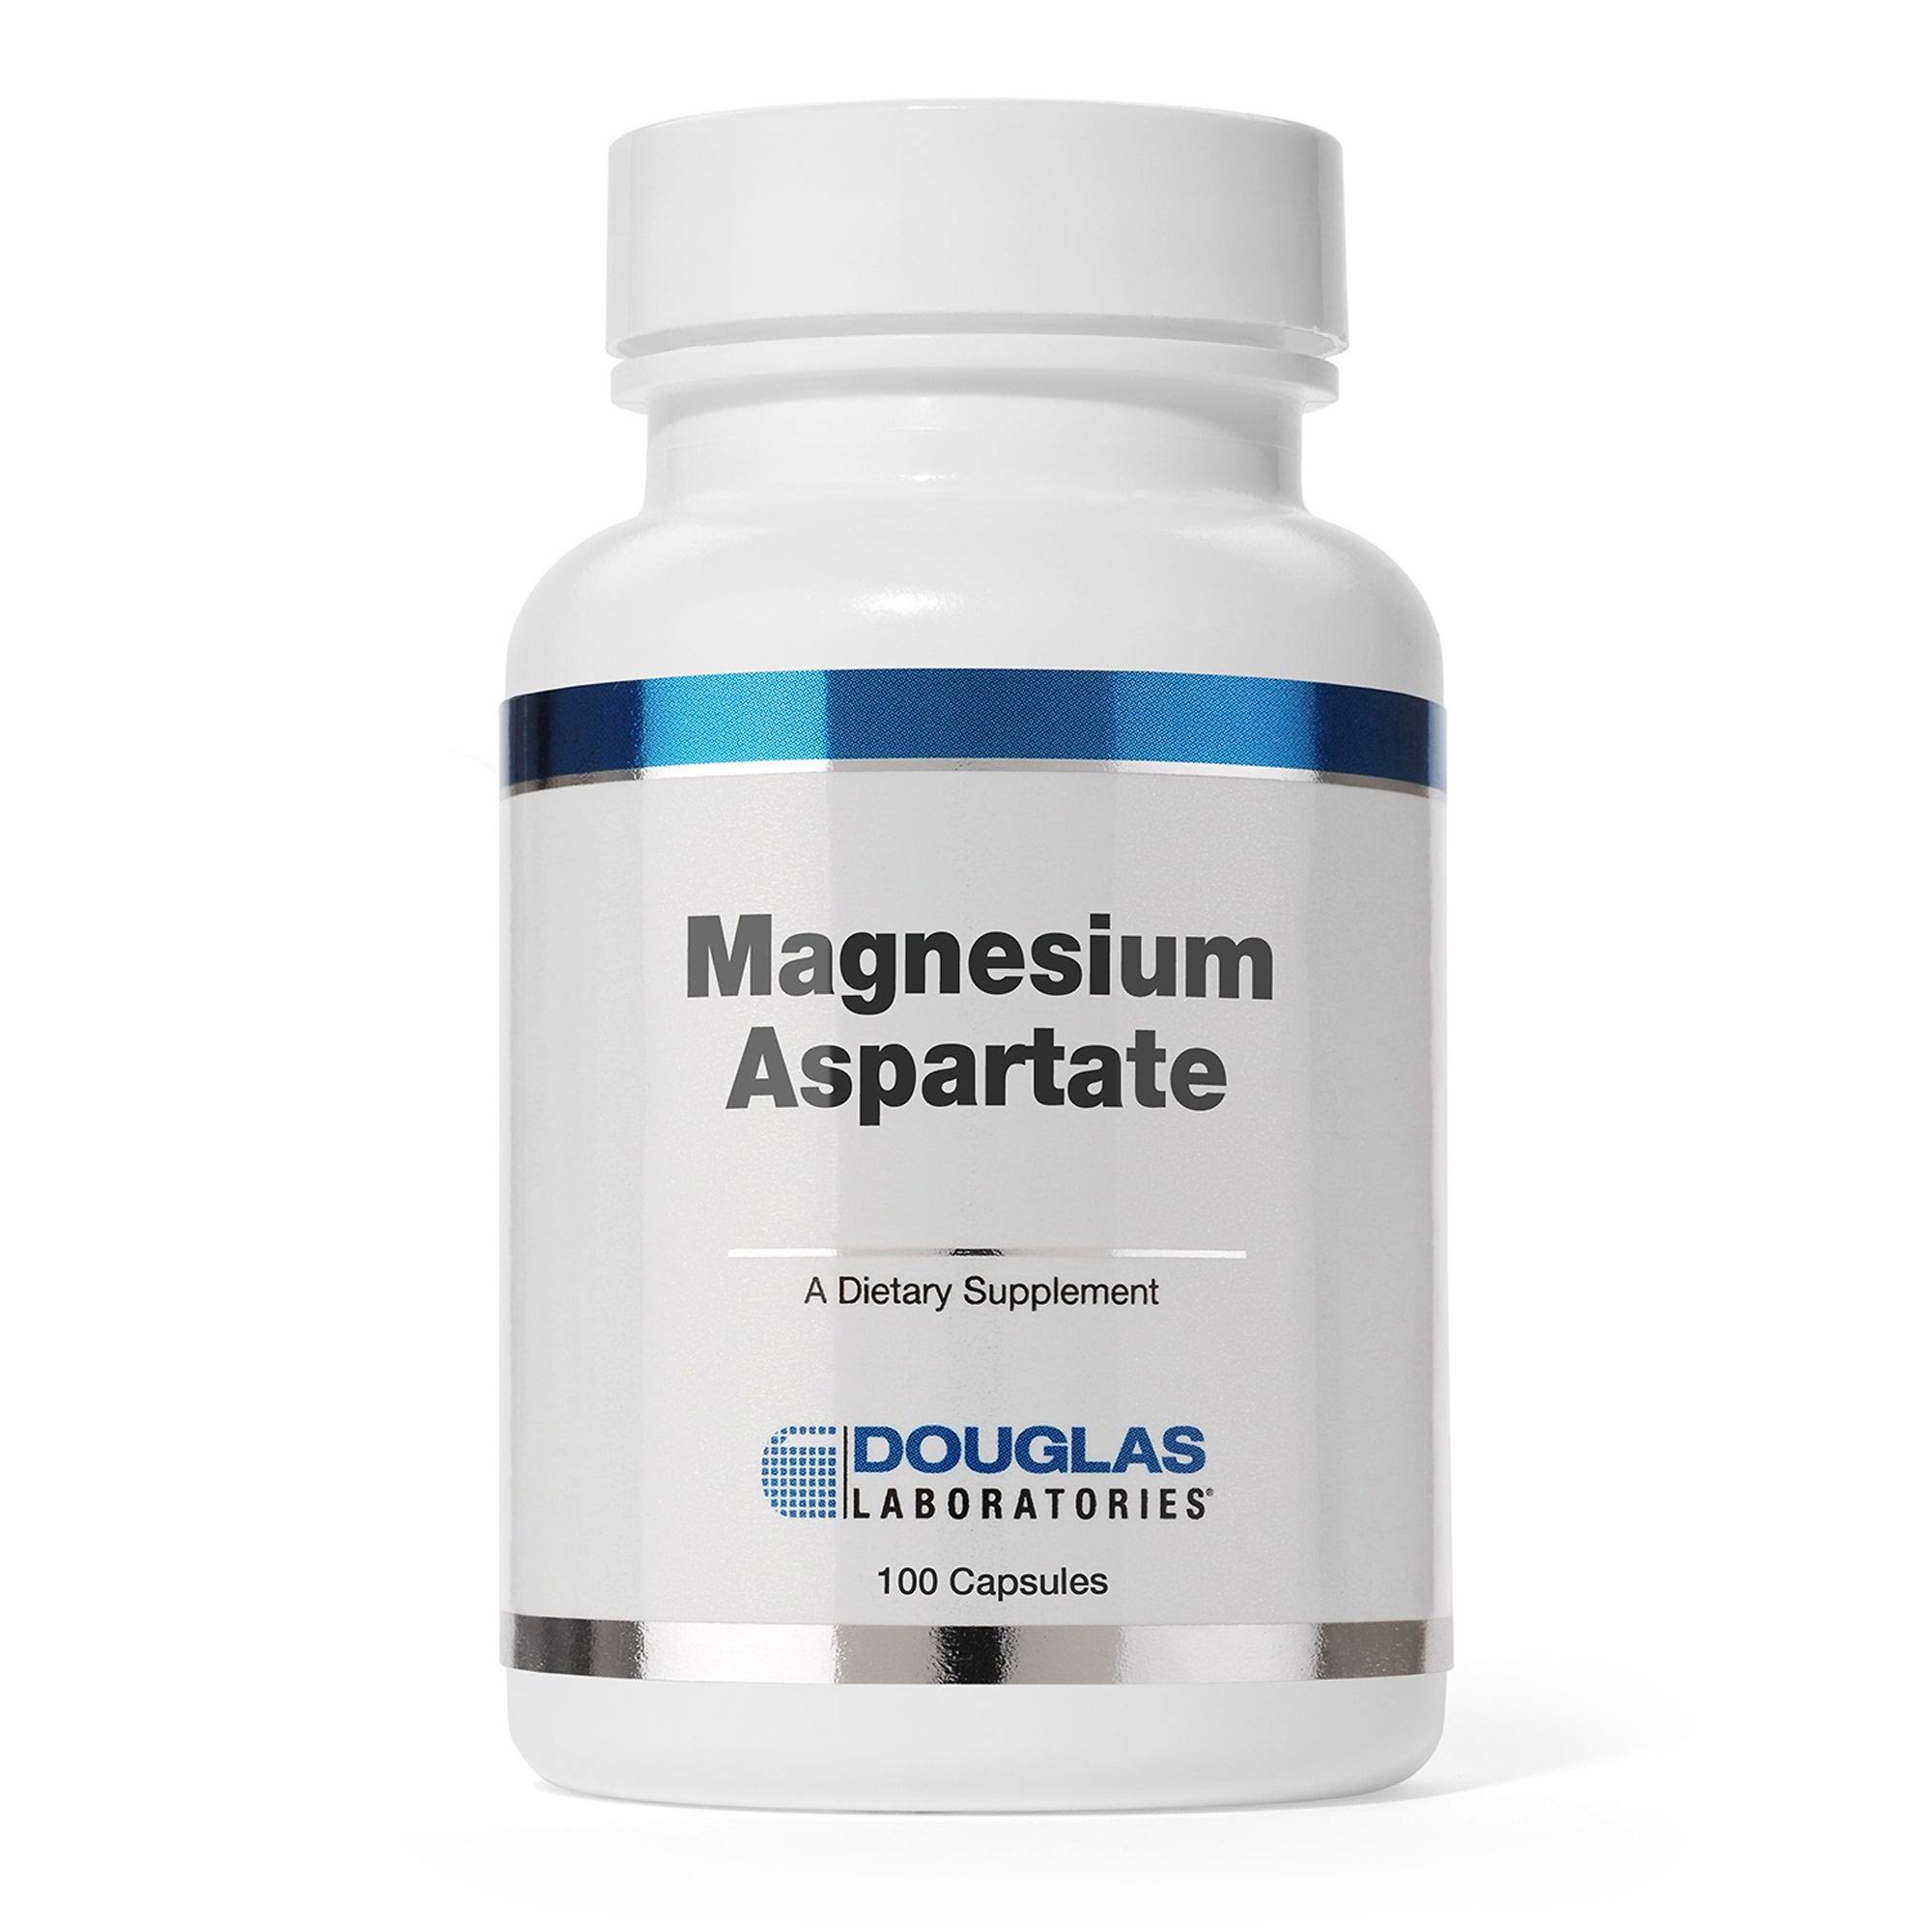 Douglas Laboratories Magnesium Aspartate - 100 Capsules